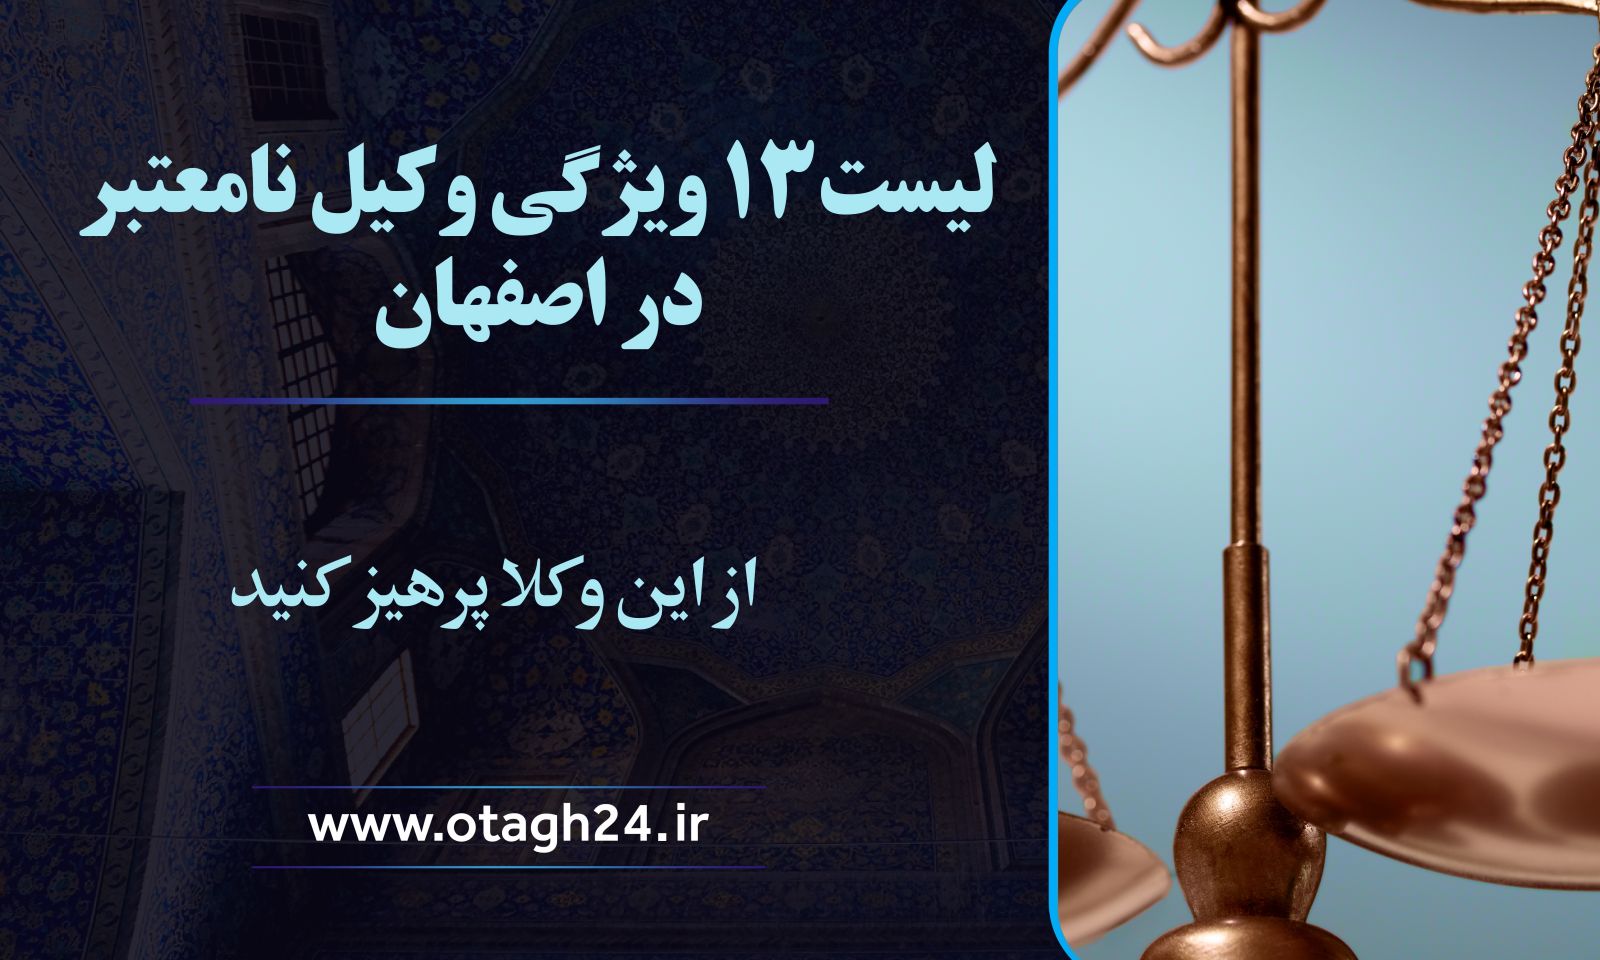 لیست 13 ویژگی وکیل نامعتبر در اصفهان؛ از این وکلا پرهیز کنید